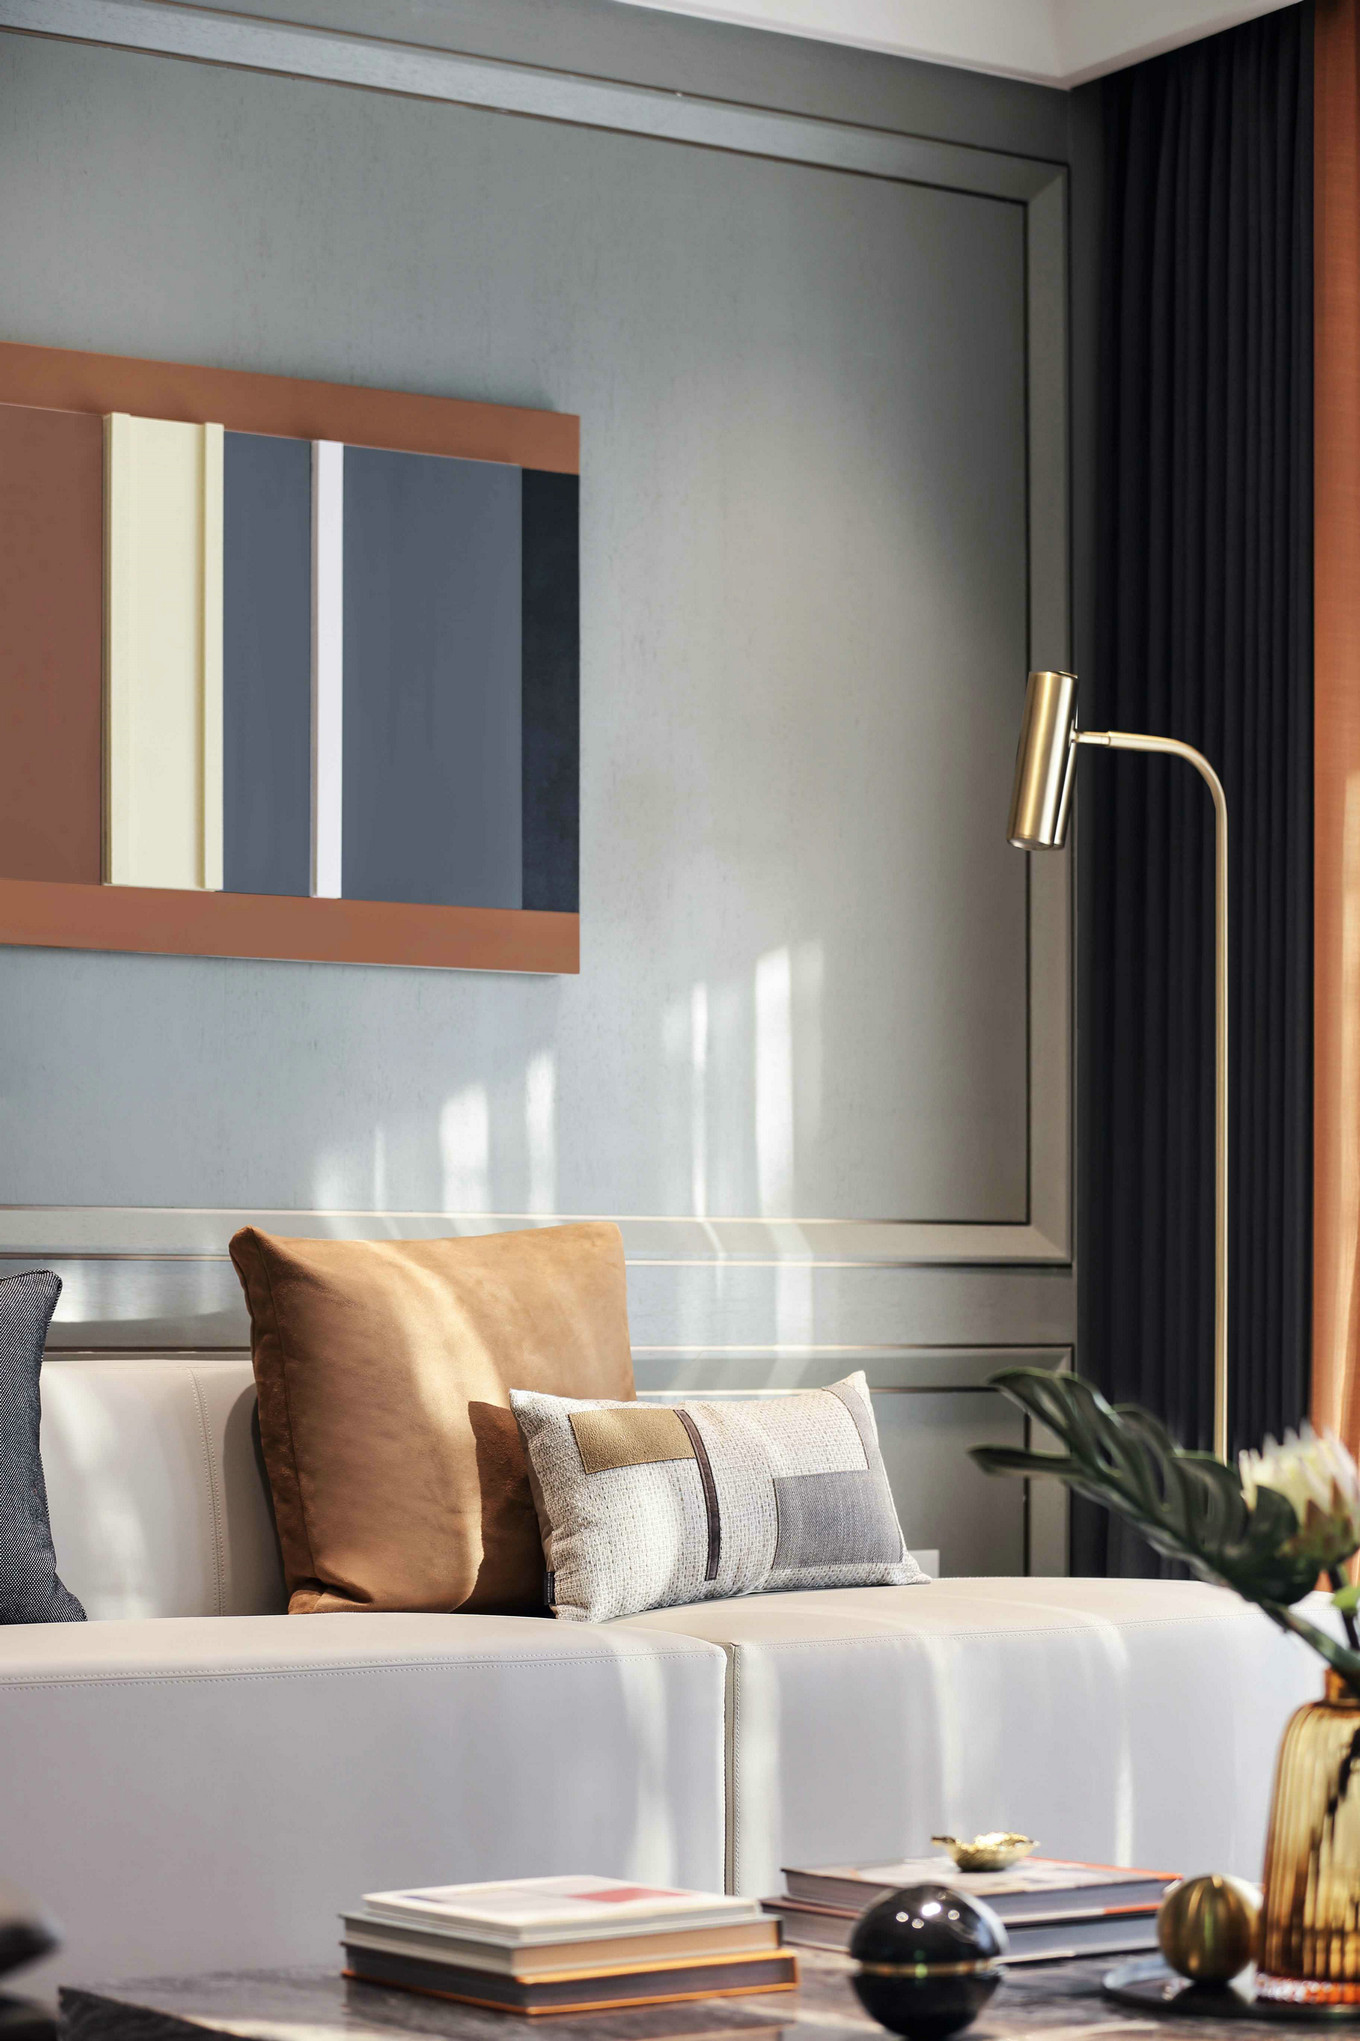 現代輕奢風格室內家裝案例效果圖-客廳沙發